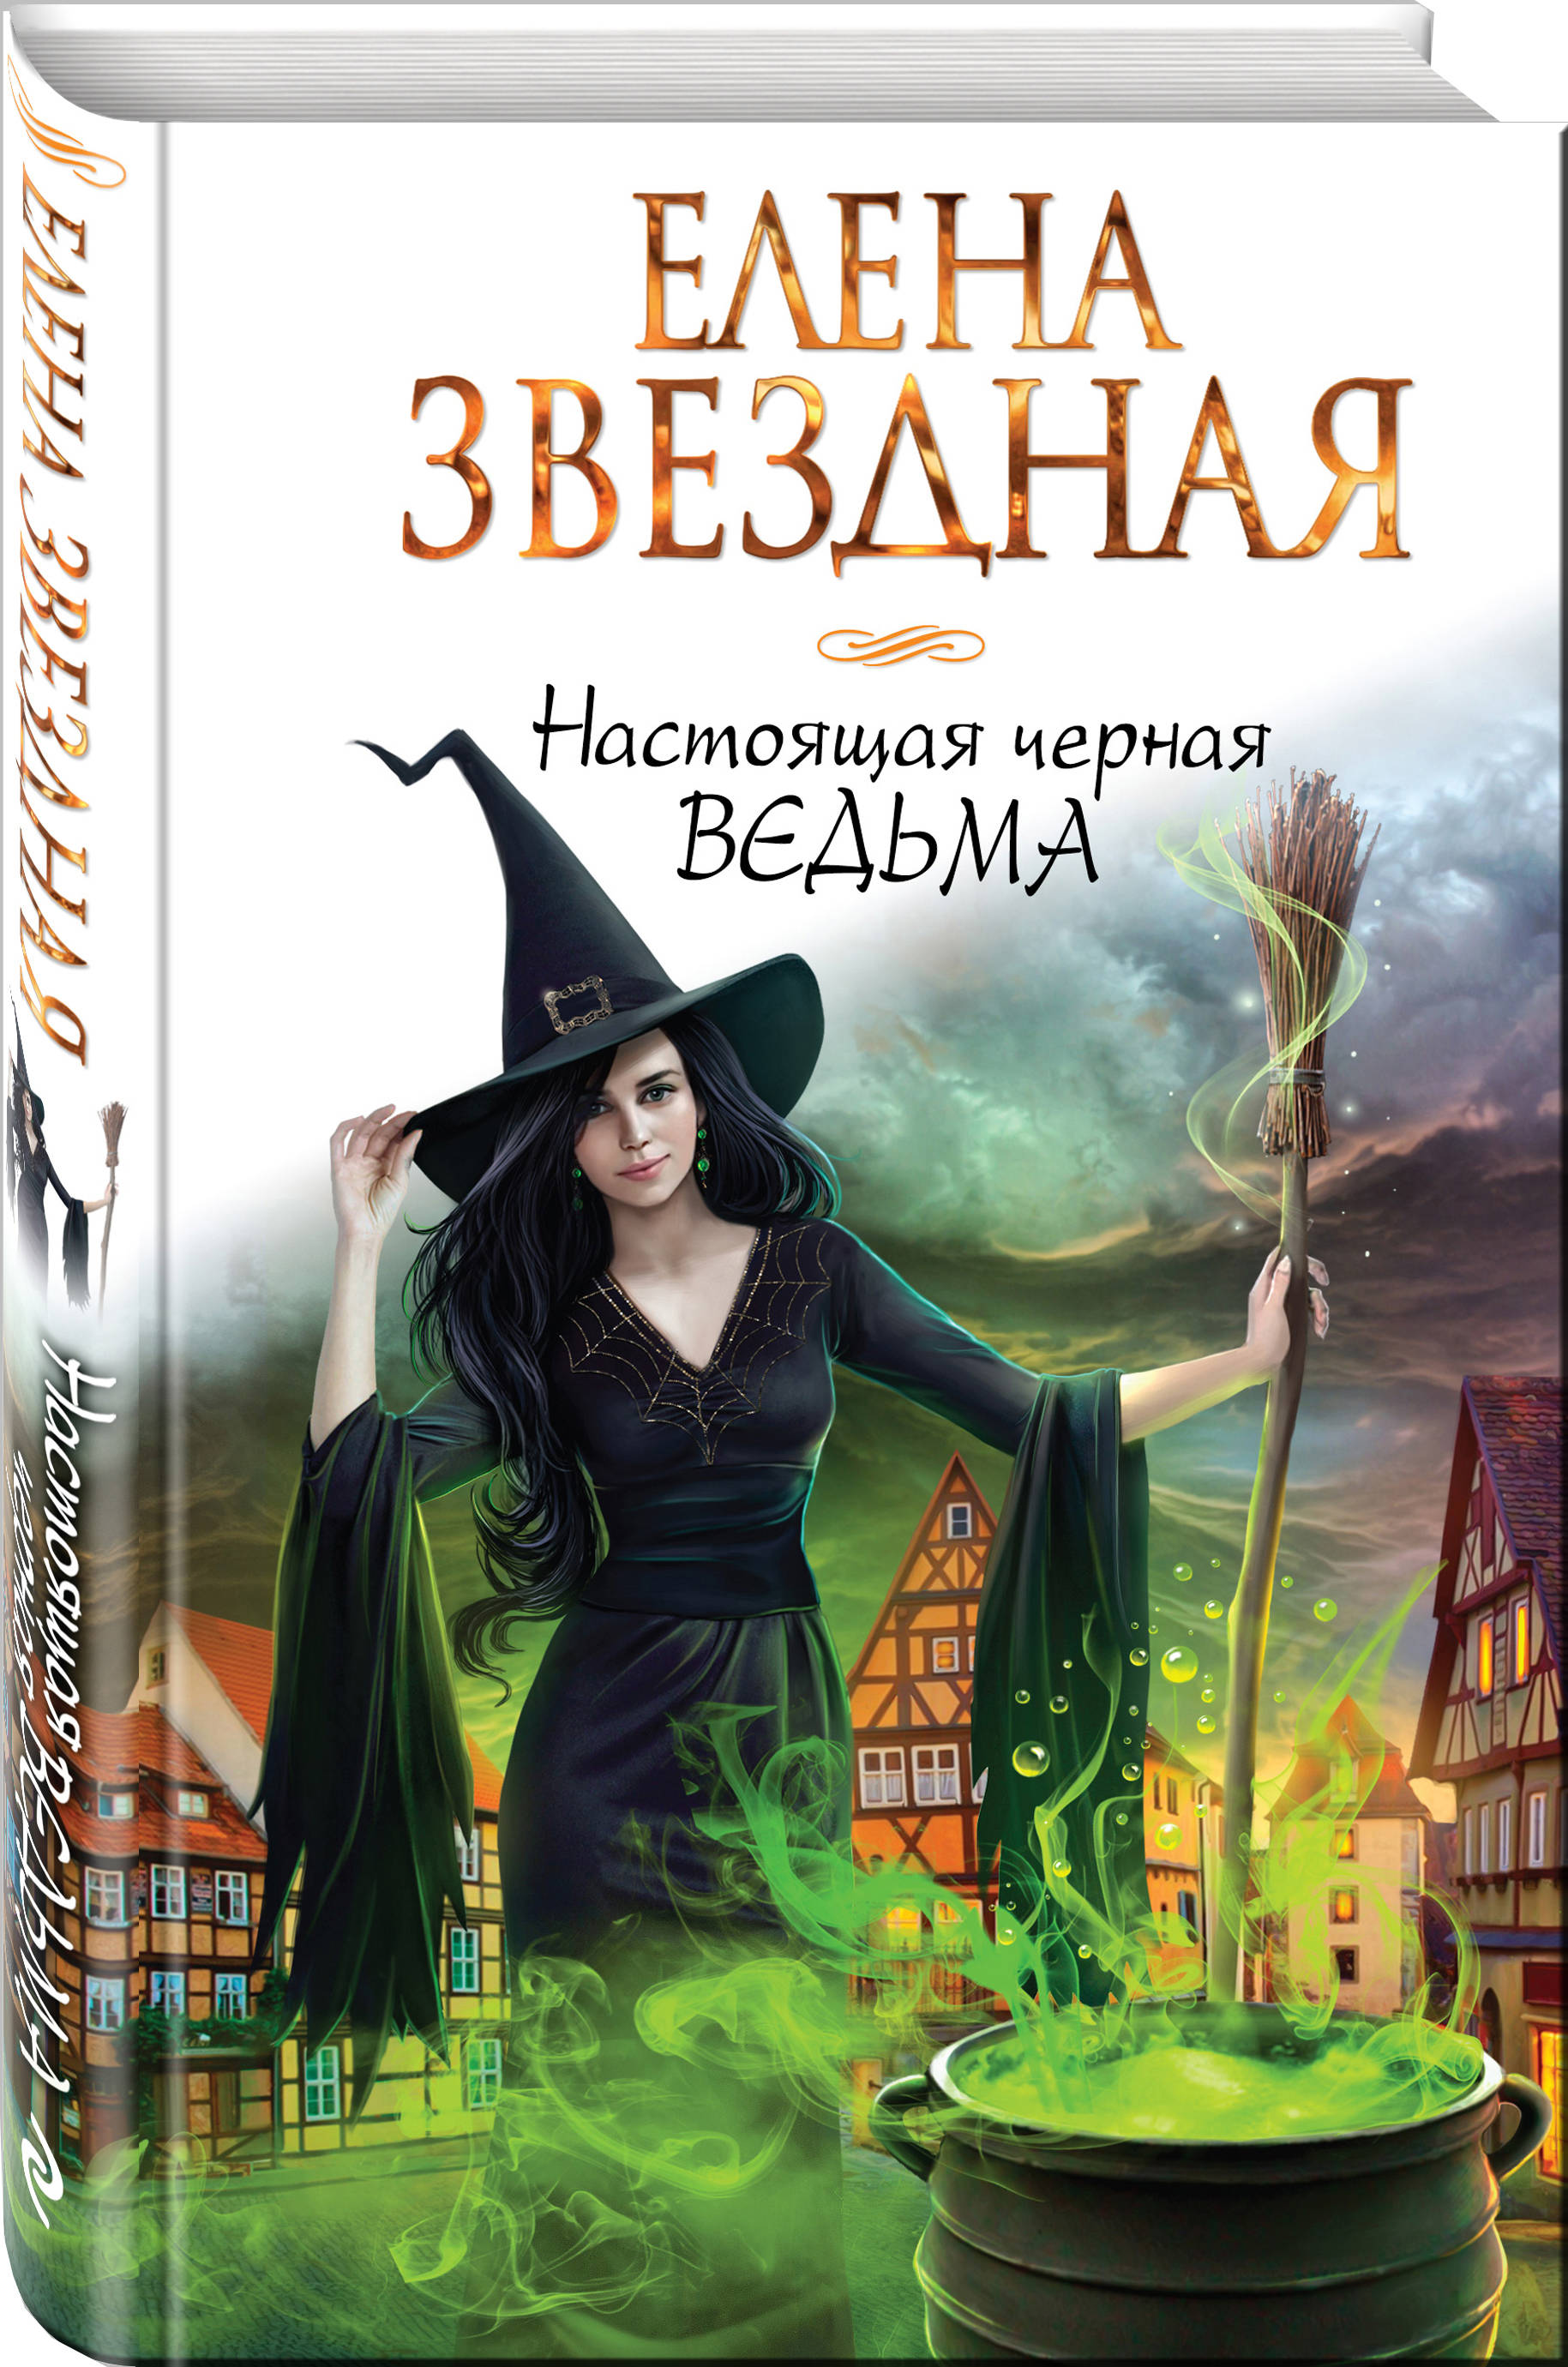 Книги про ведьмы фэнтези магические